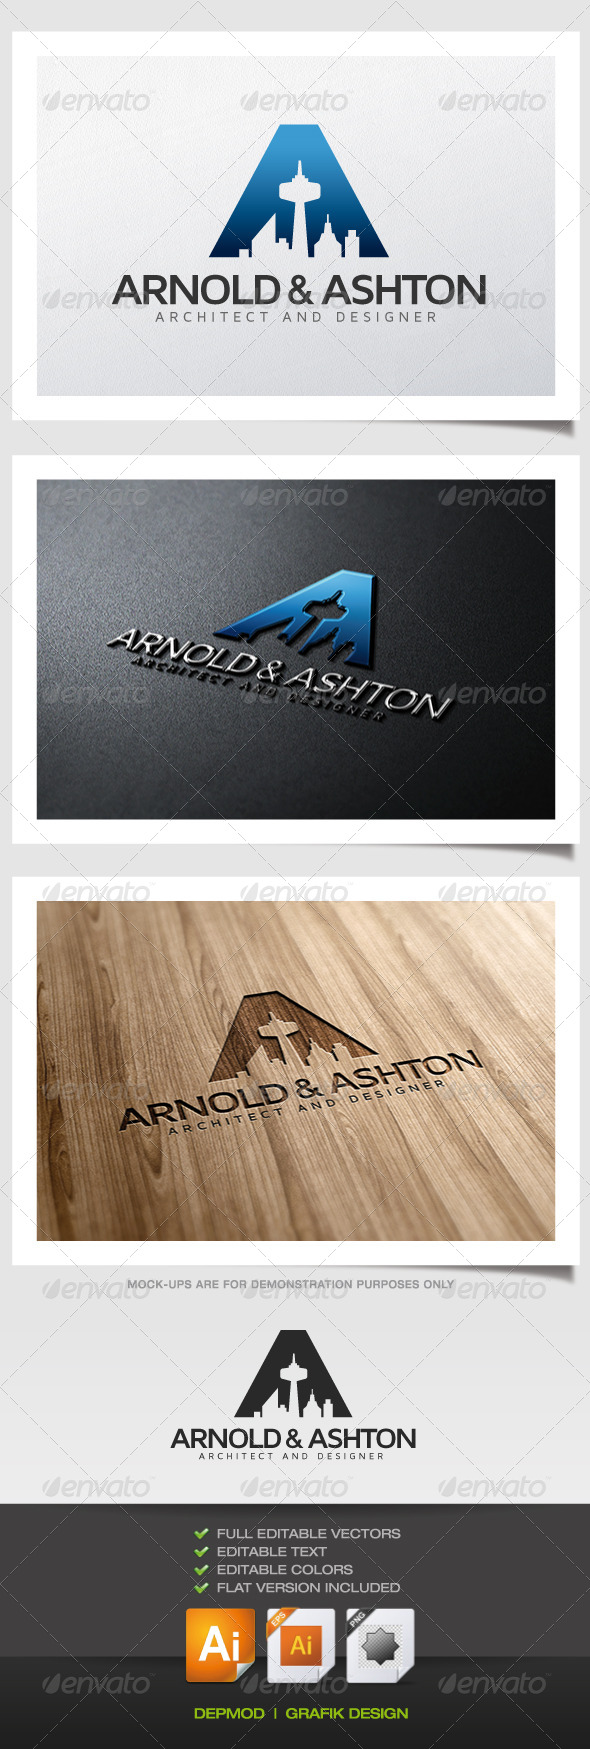 Arnold & Ashton Architect Logo